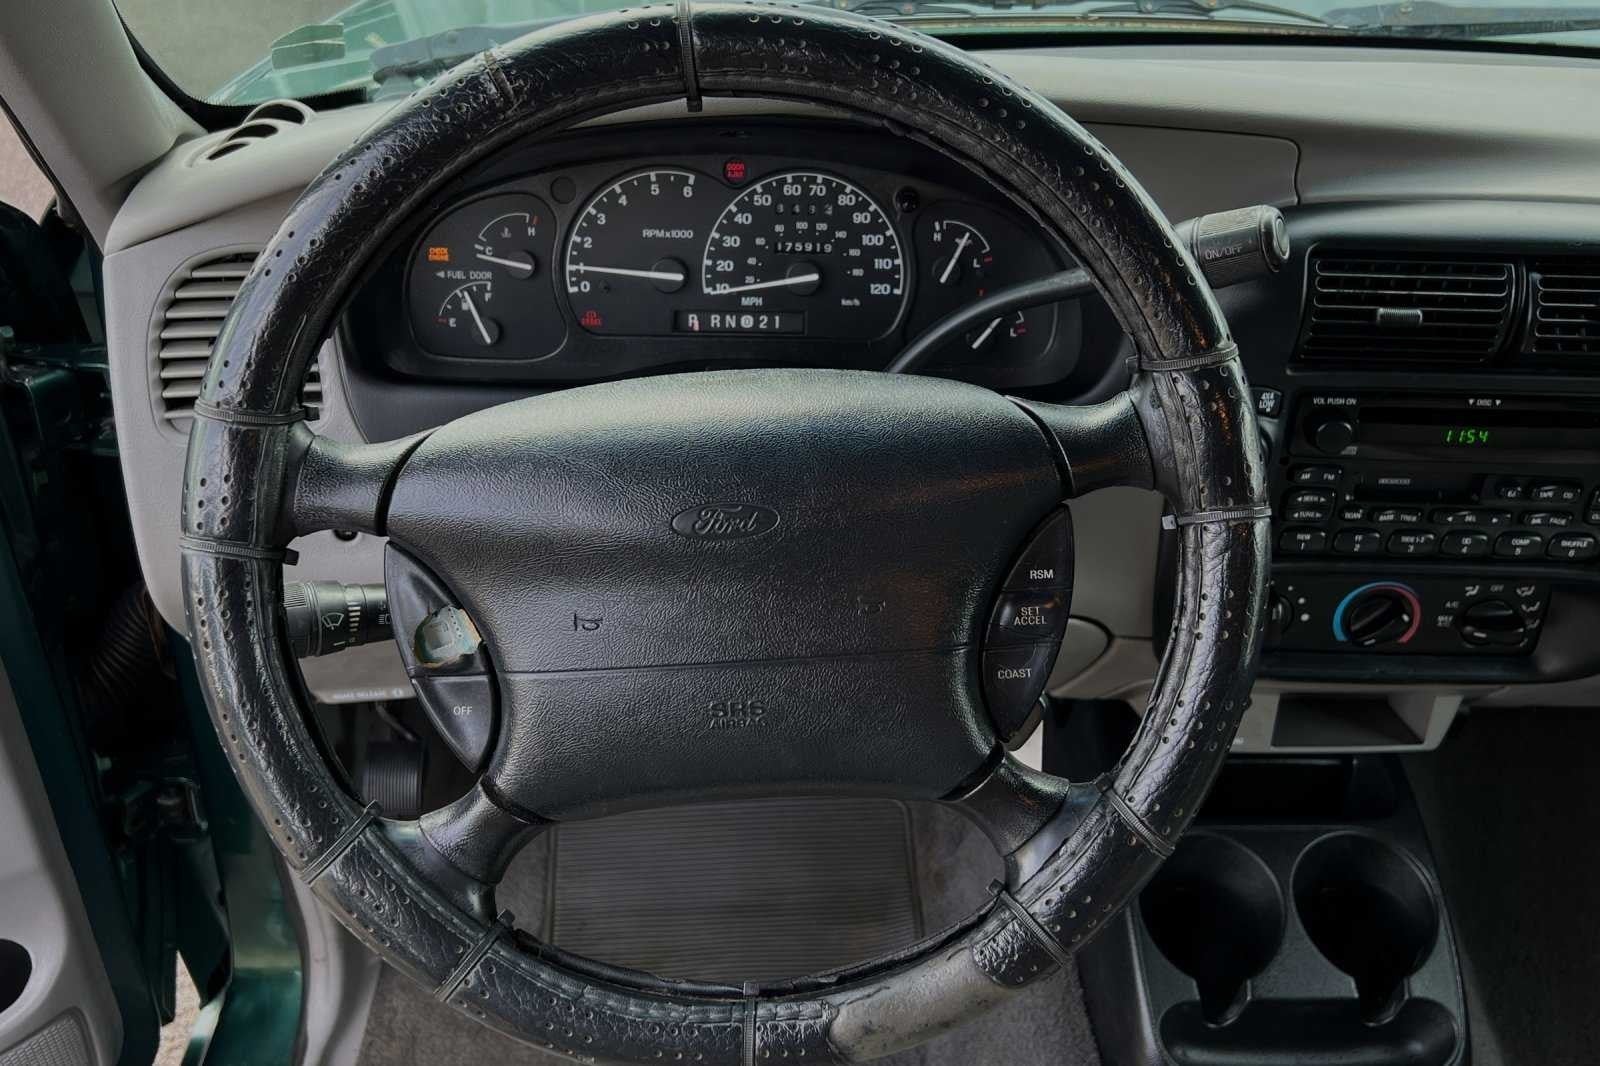 2000 Ford Ranger XLT 4X4